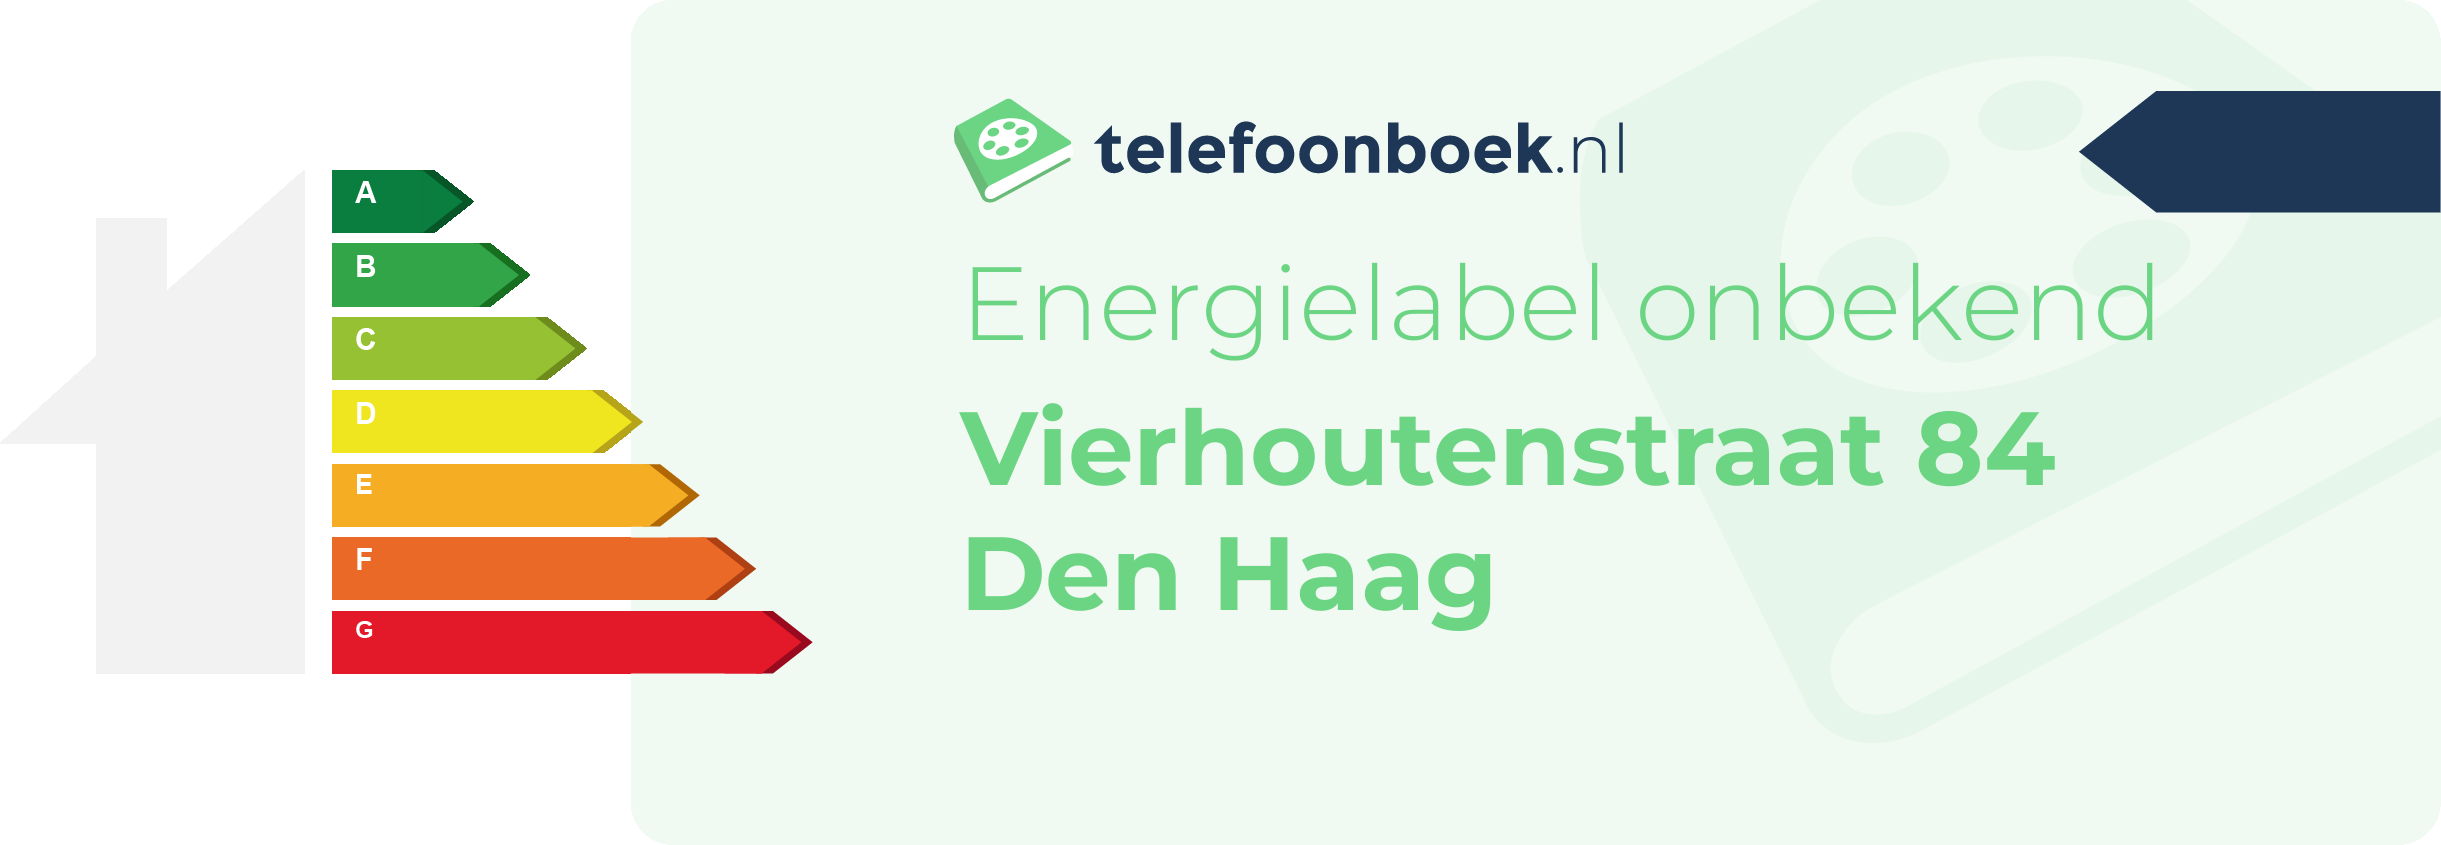 Energielabel Vierhoutenstraat 84 Den Haag